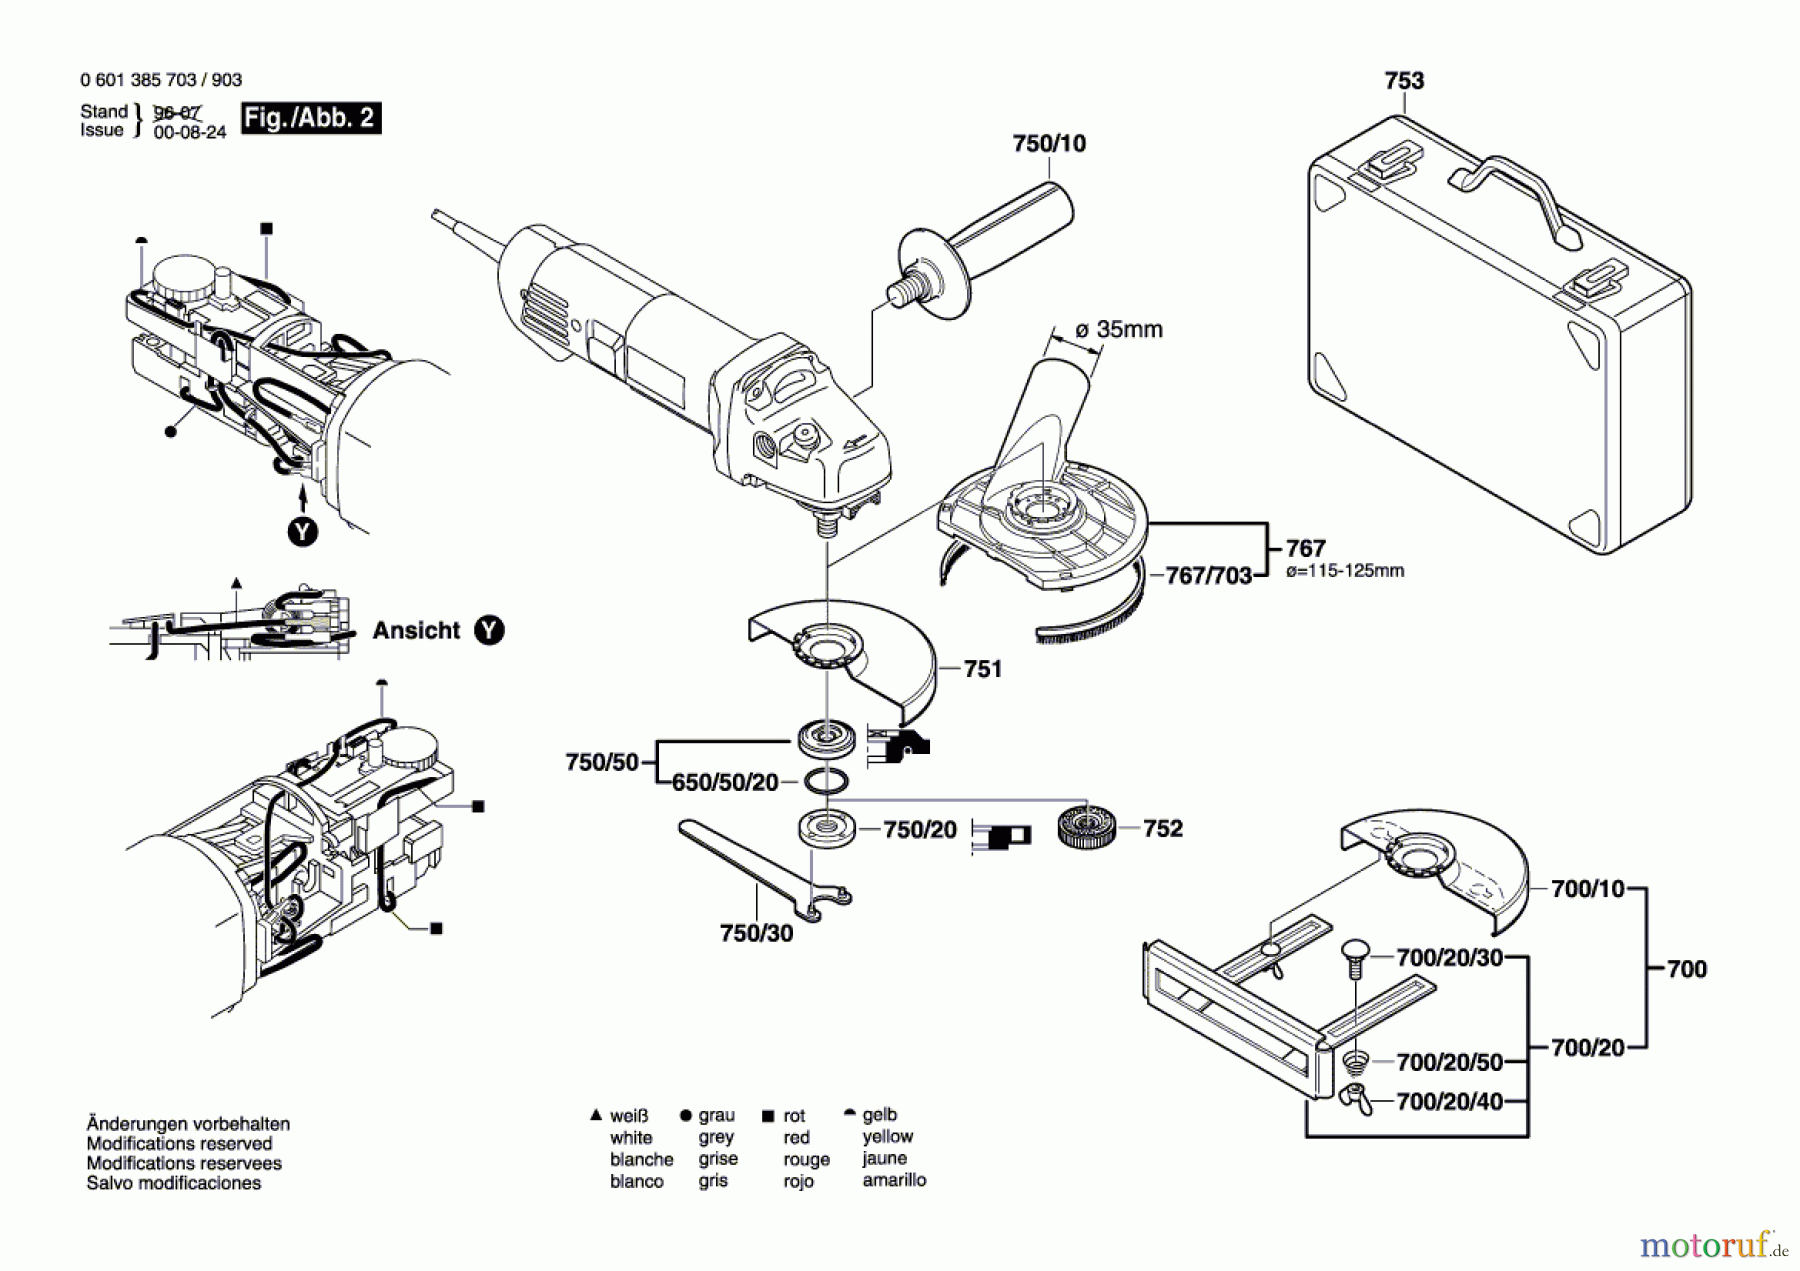  Bosch Werkzeug Winkelschleifer GWS 14-125 CE Seite 2